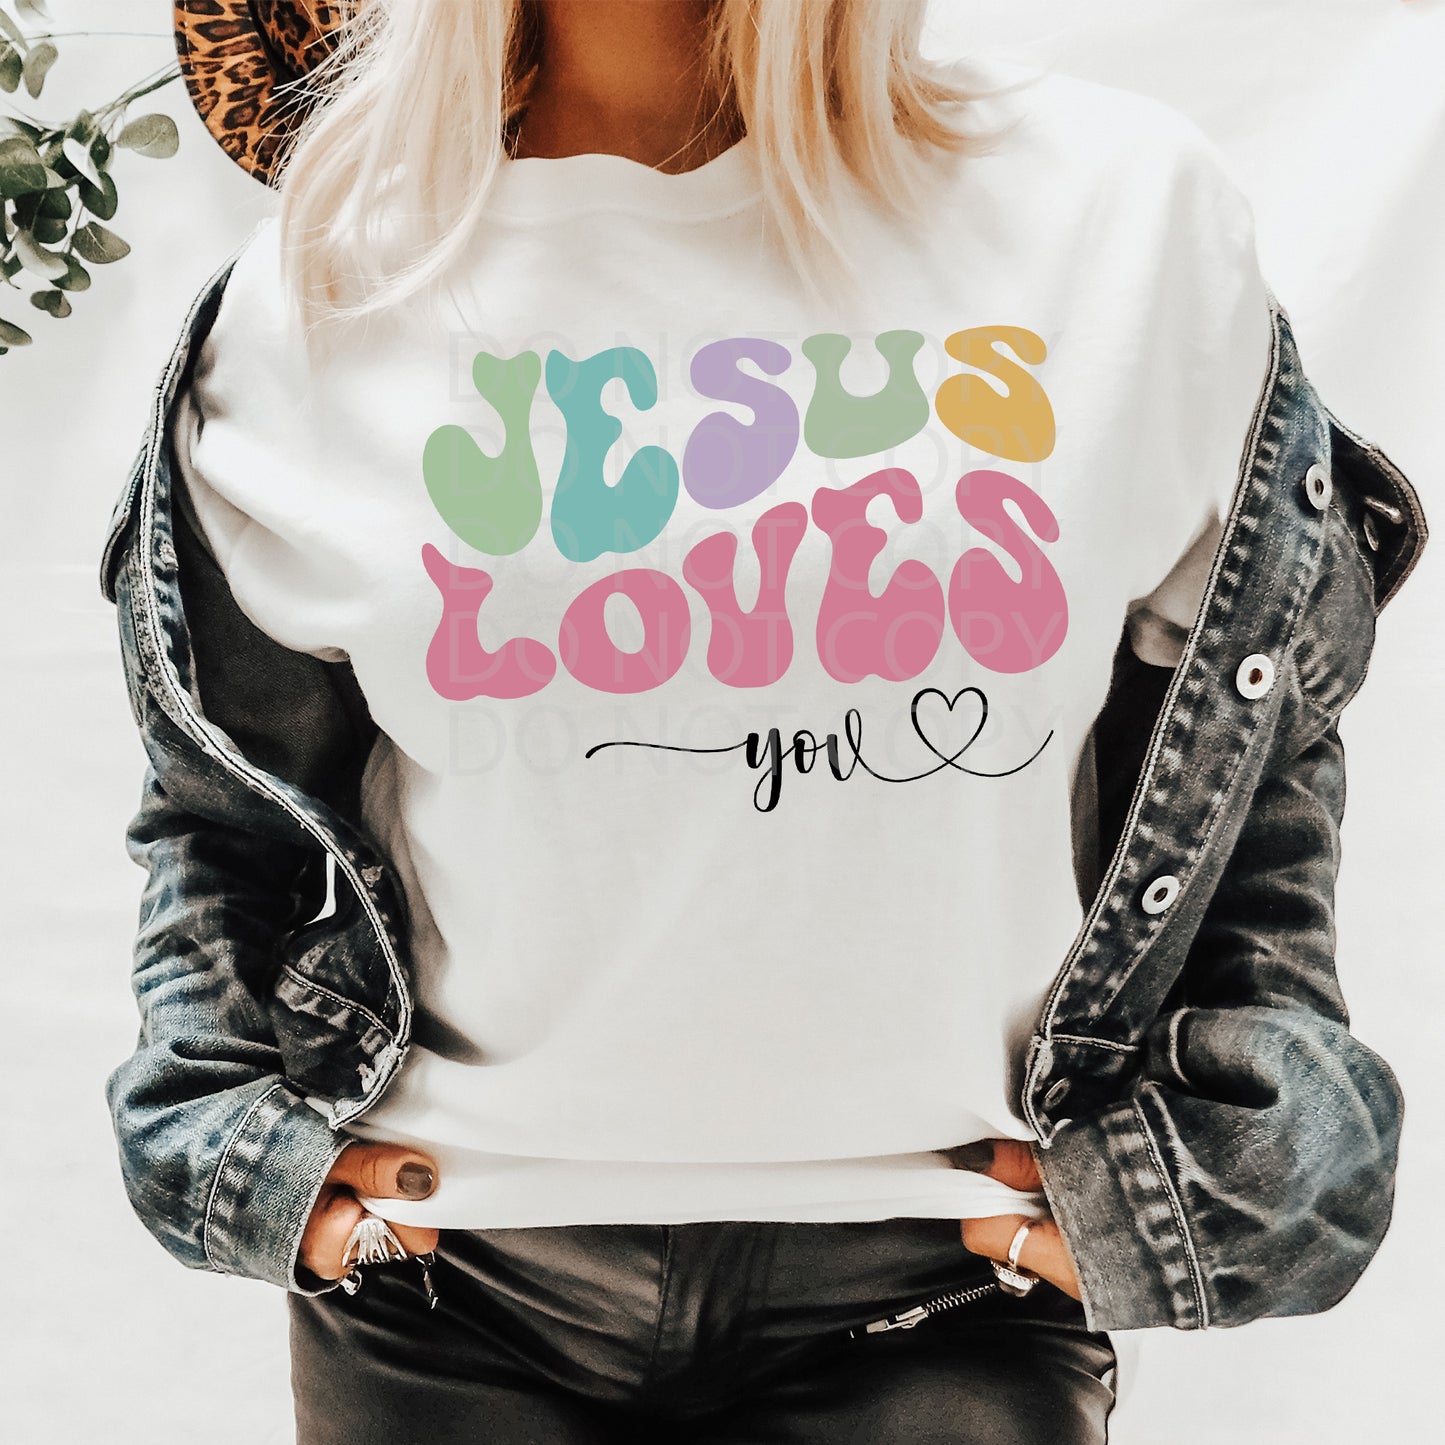 Jesus Loves You DTF & Sublimation Transfer